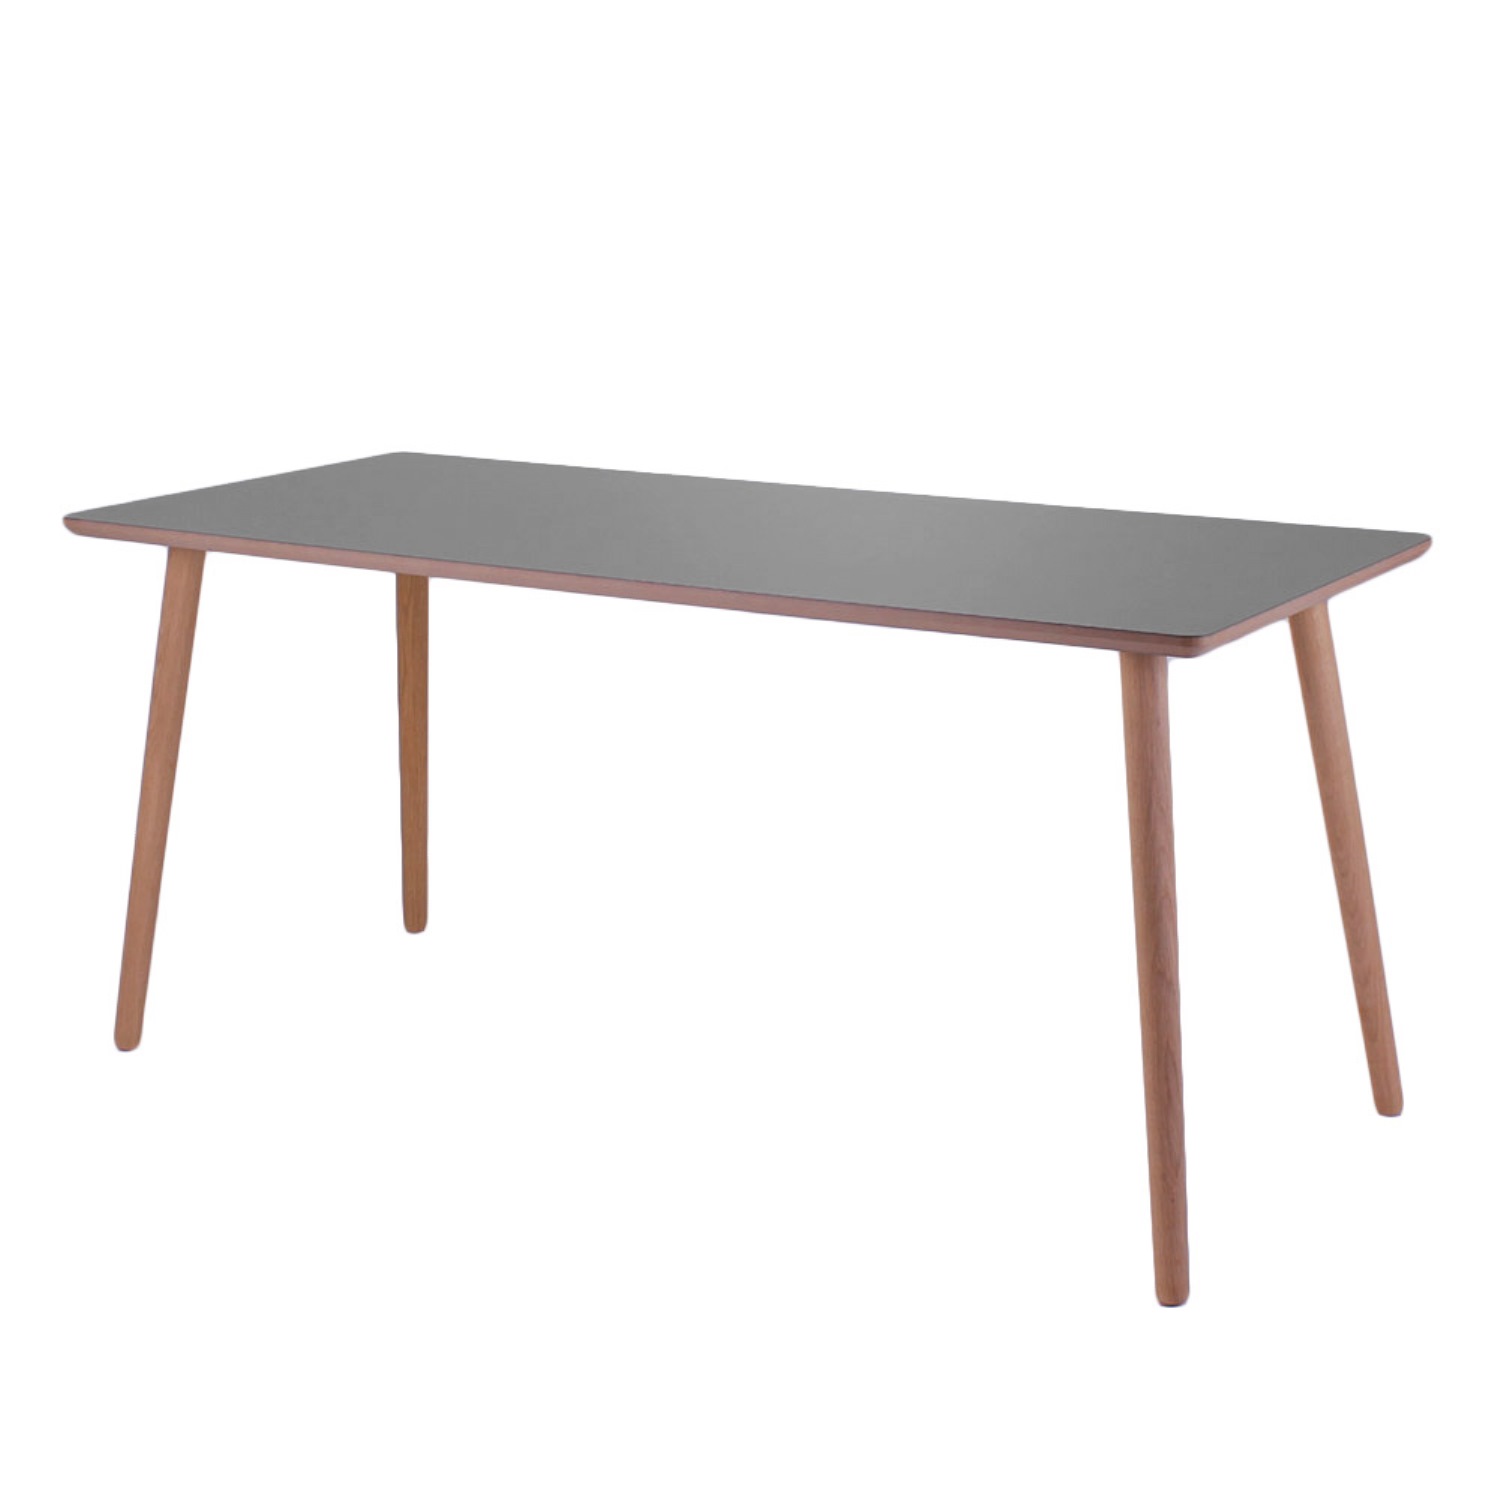 Dimm - Skrivebord, farvet højtrykslaminat, ege ben 100 x 60 cm Hvid laminat